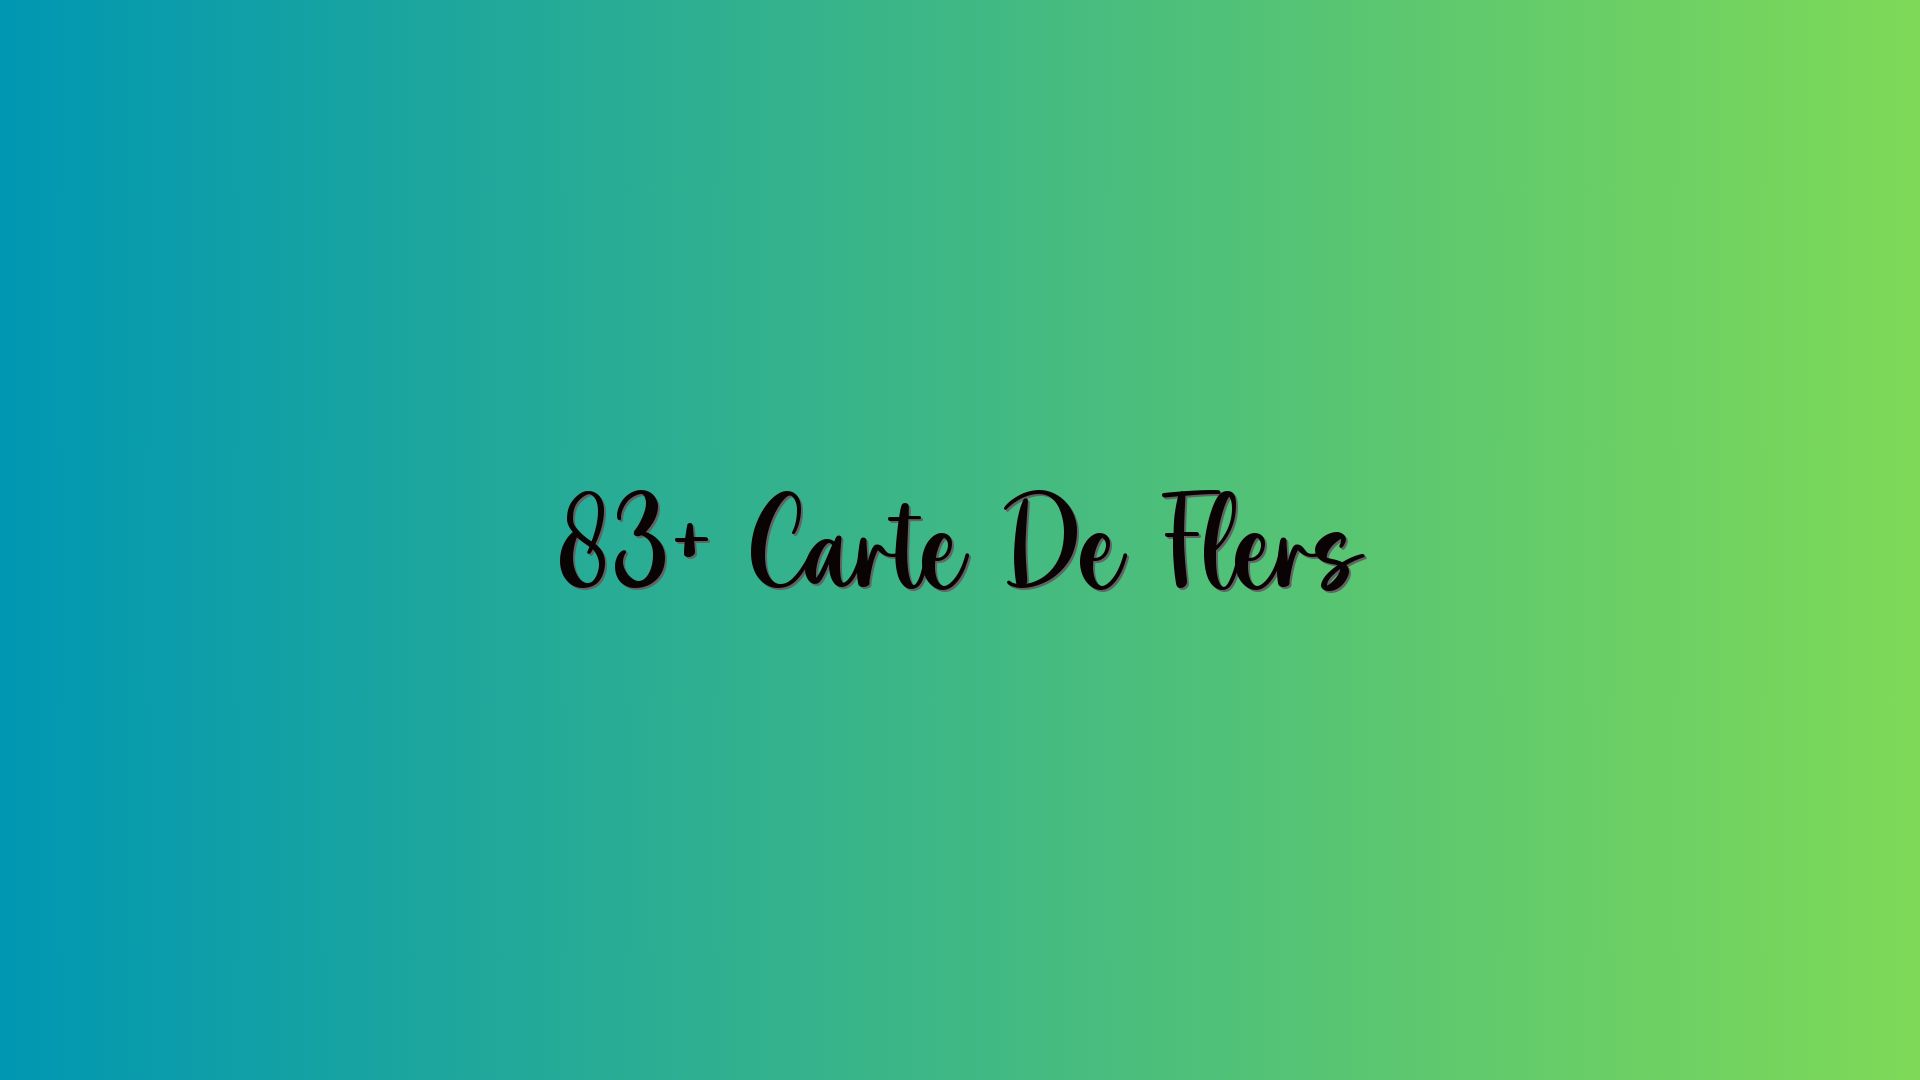 83+ Carte De Flers